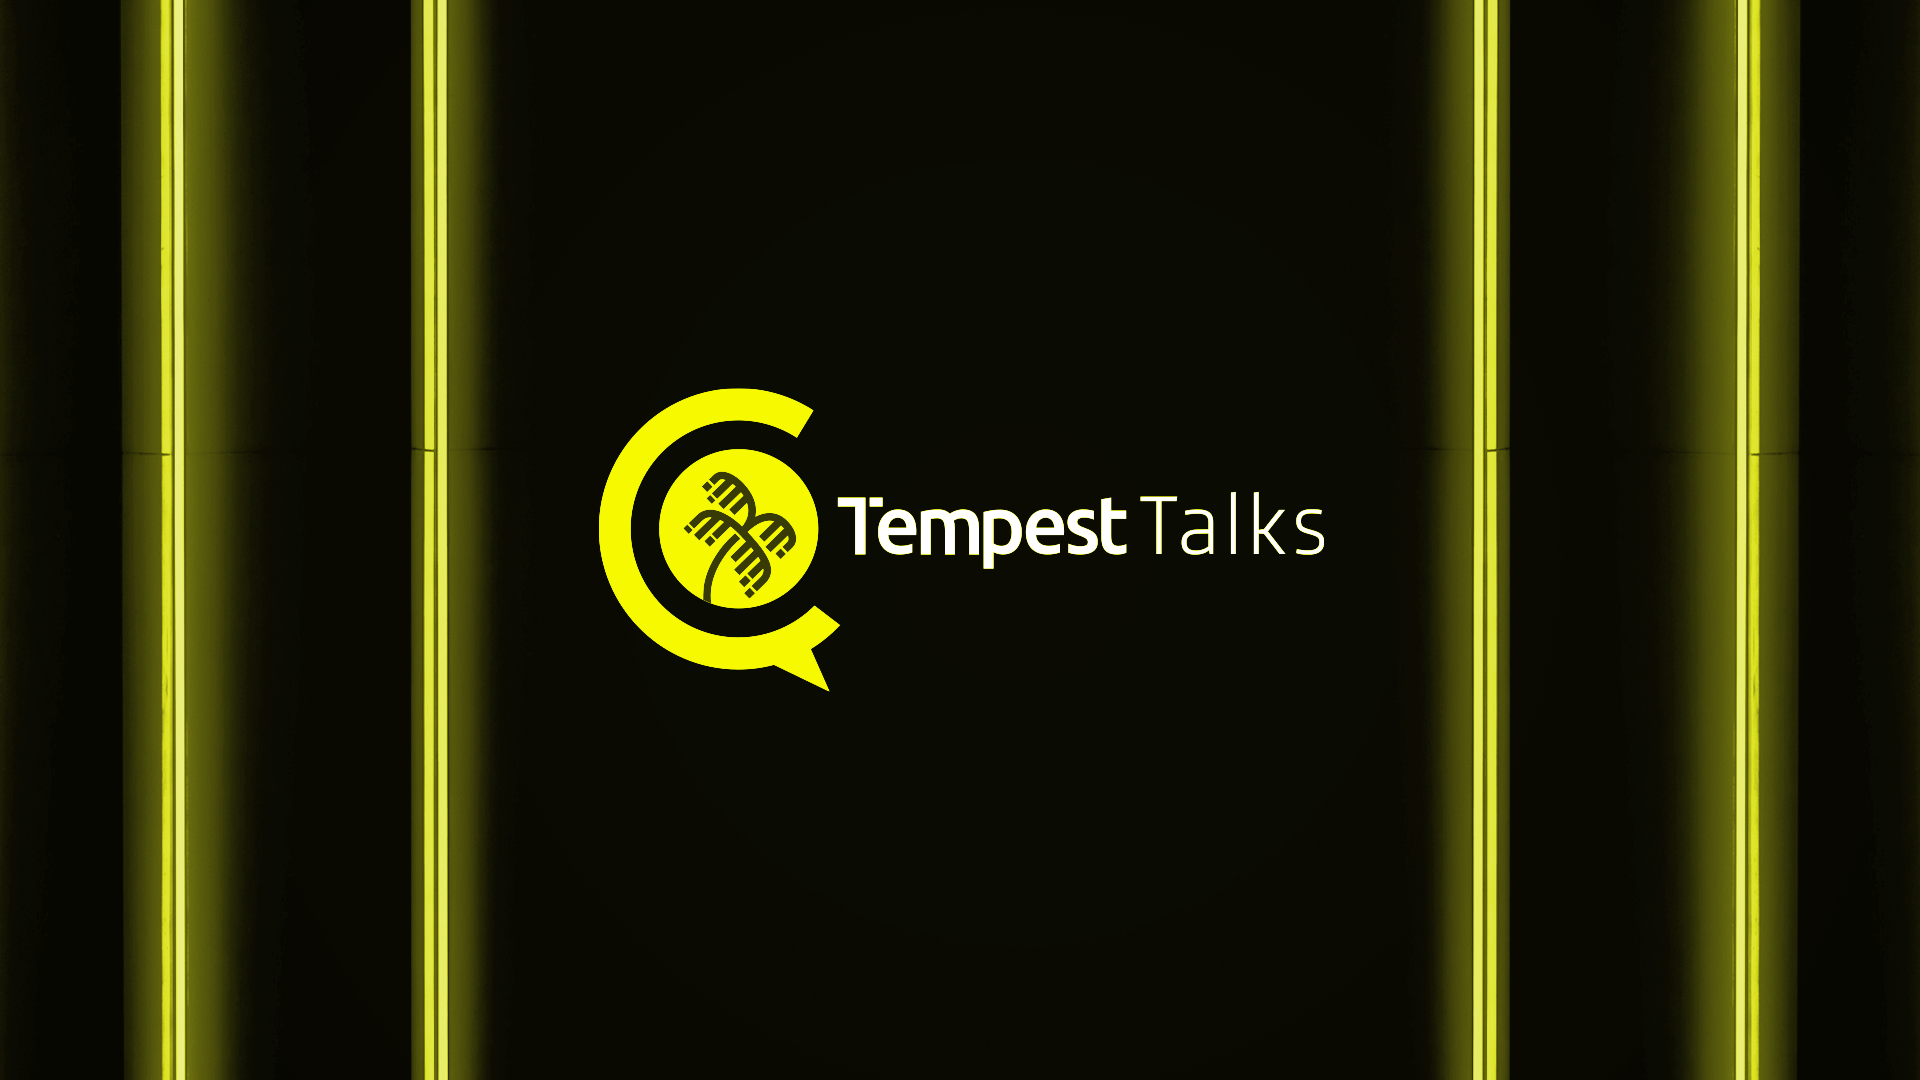 Tempest Talks: conheça um dos maiores eventos brasileiros dedicados à Cibersegurança e prepare-se para a próxima edição